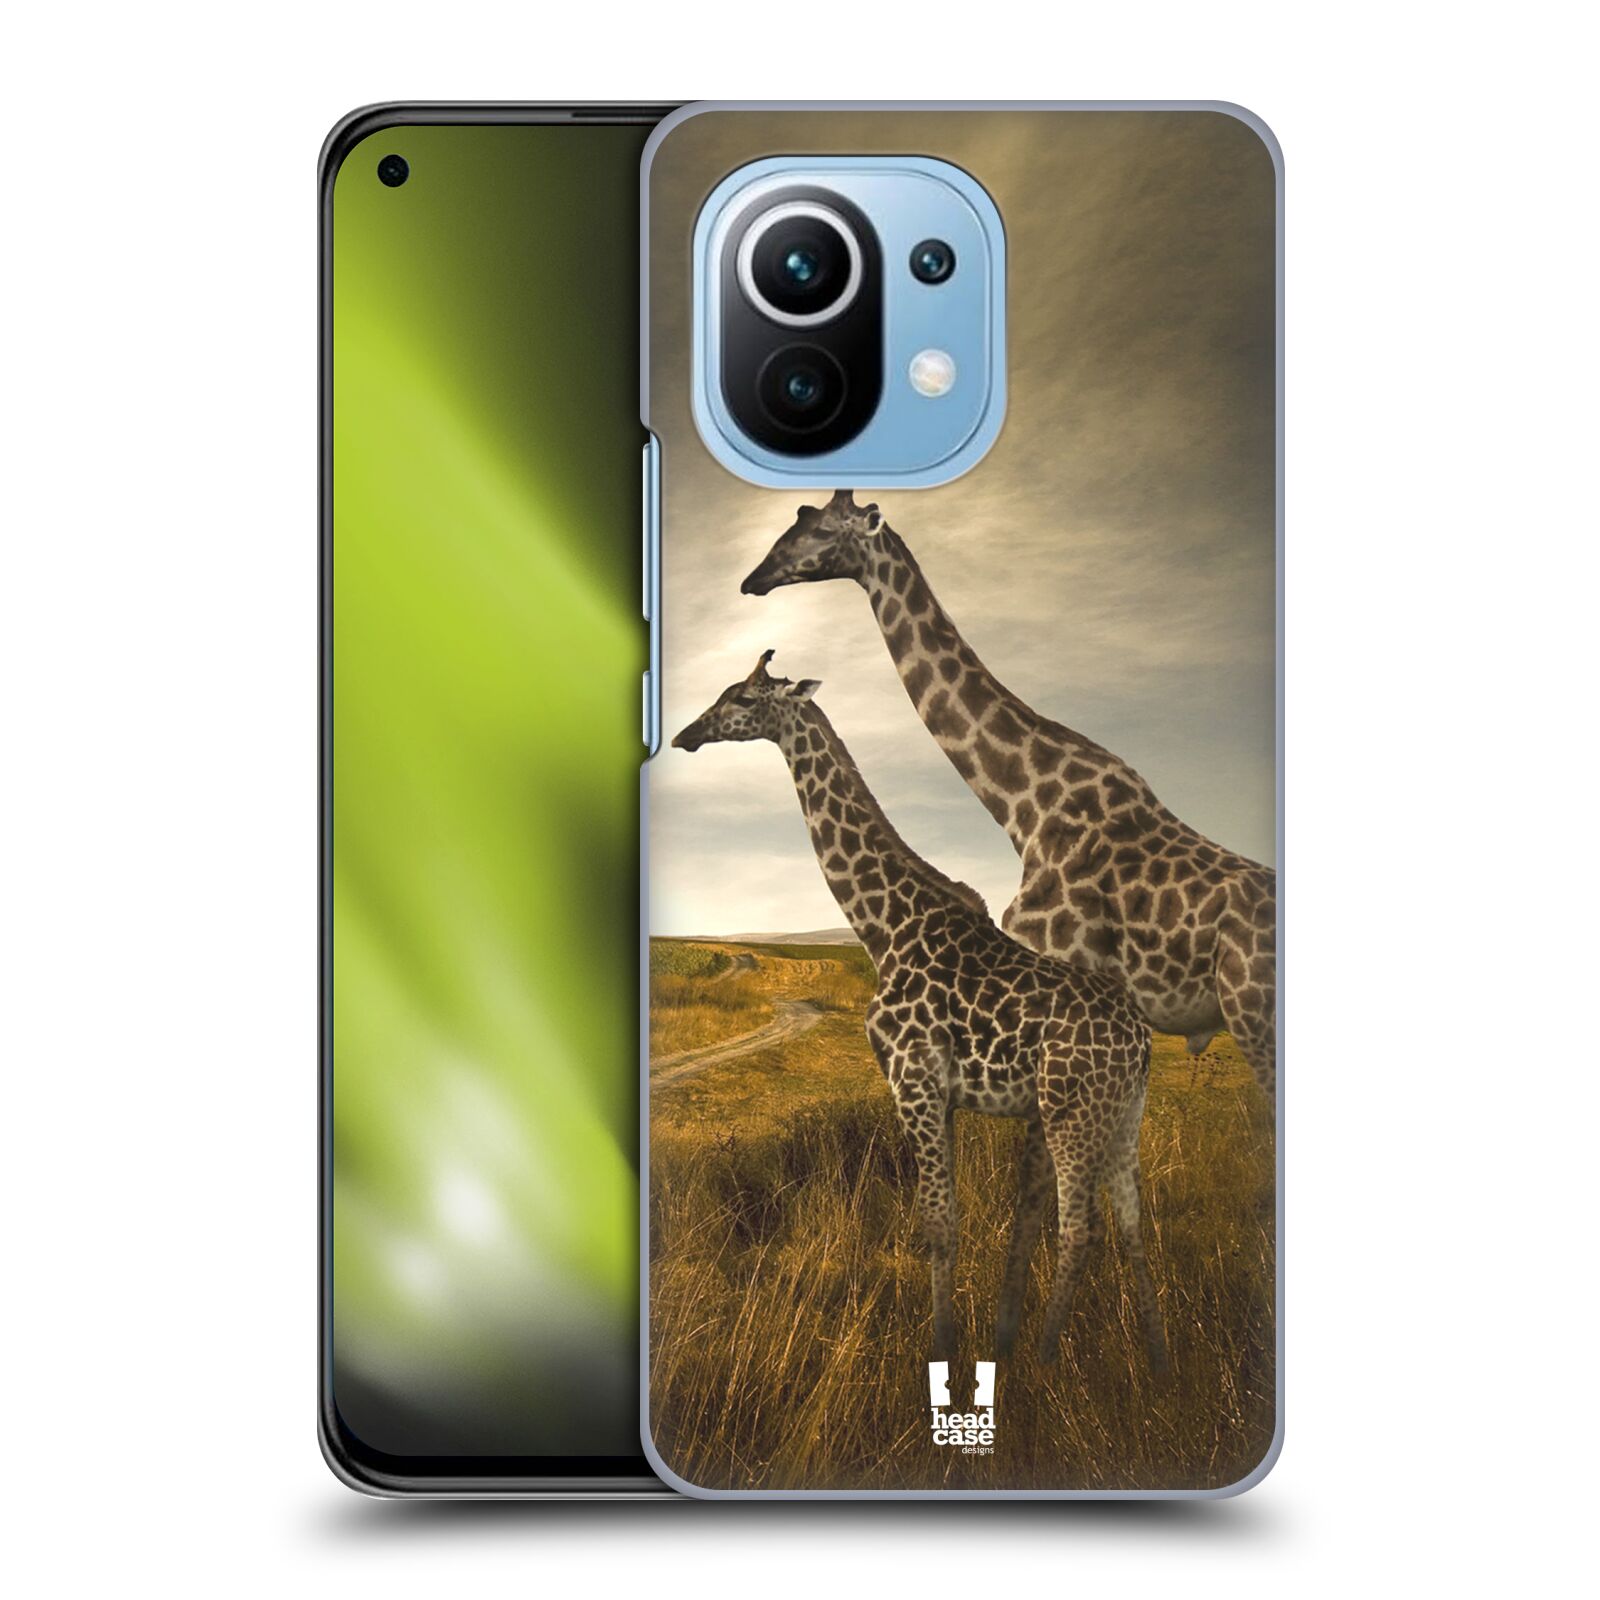 Zadní obal pro mobil Xiaomi Mi 11 - HEAD CASE - Svět zvířat žirafy